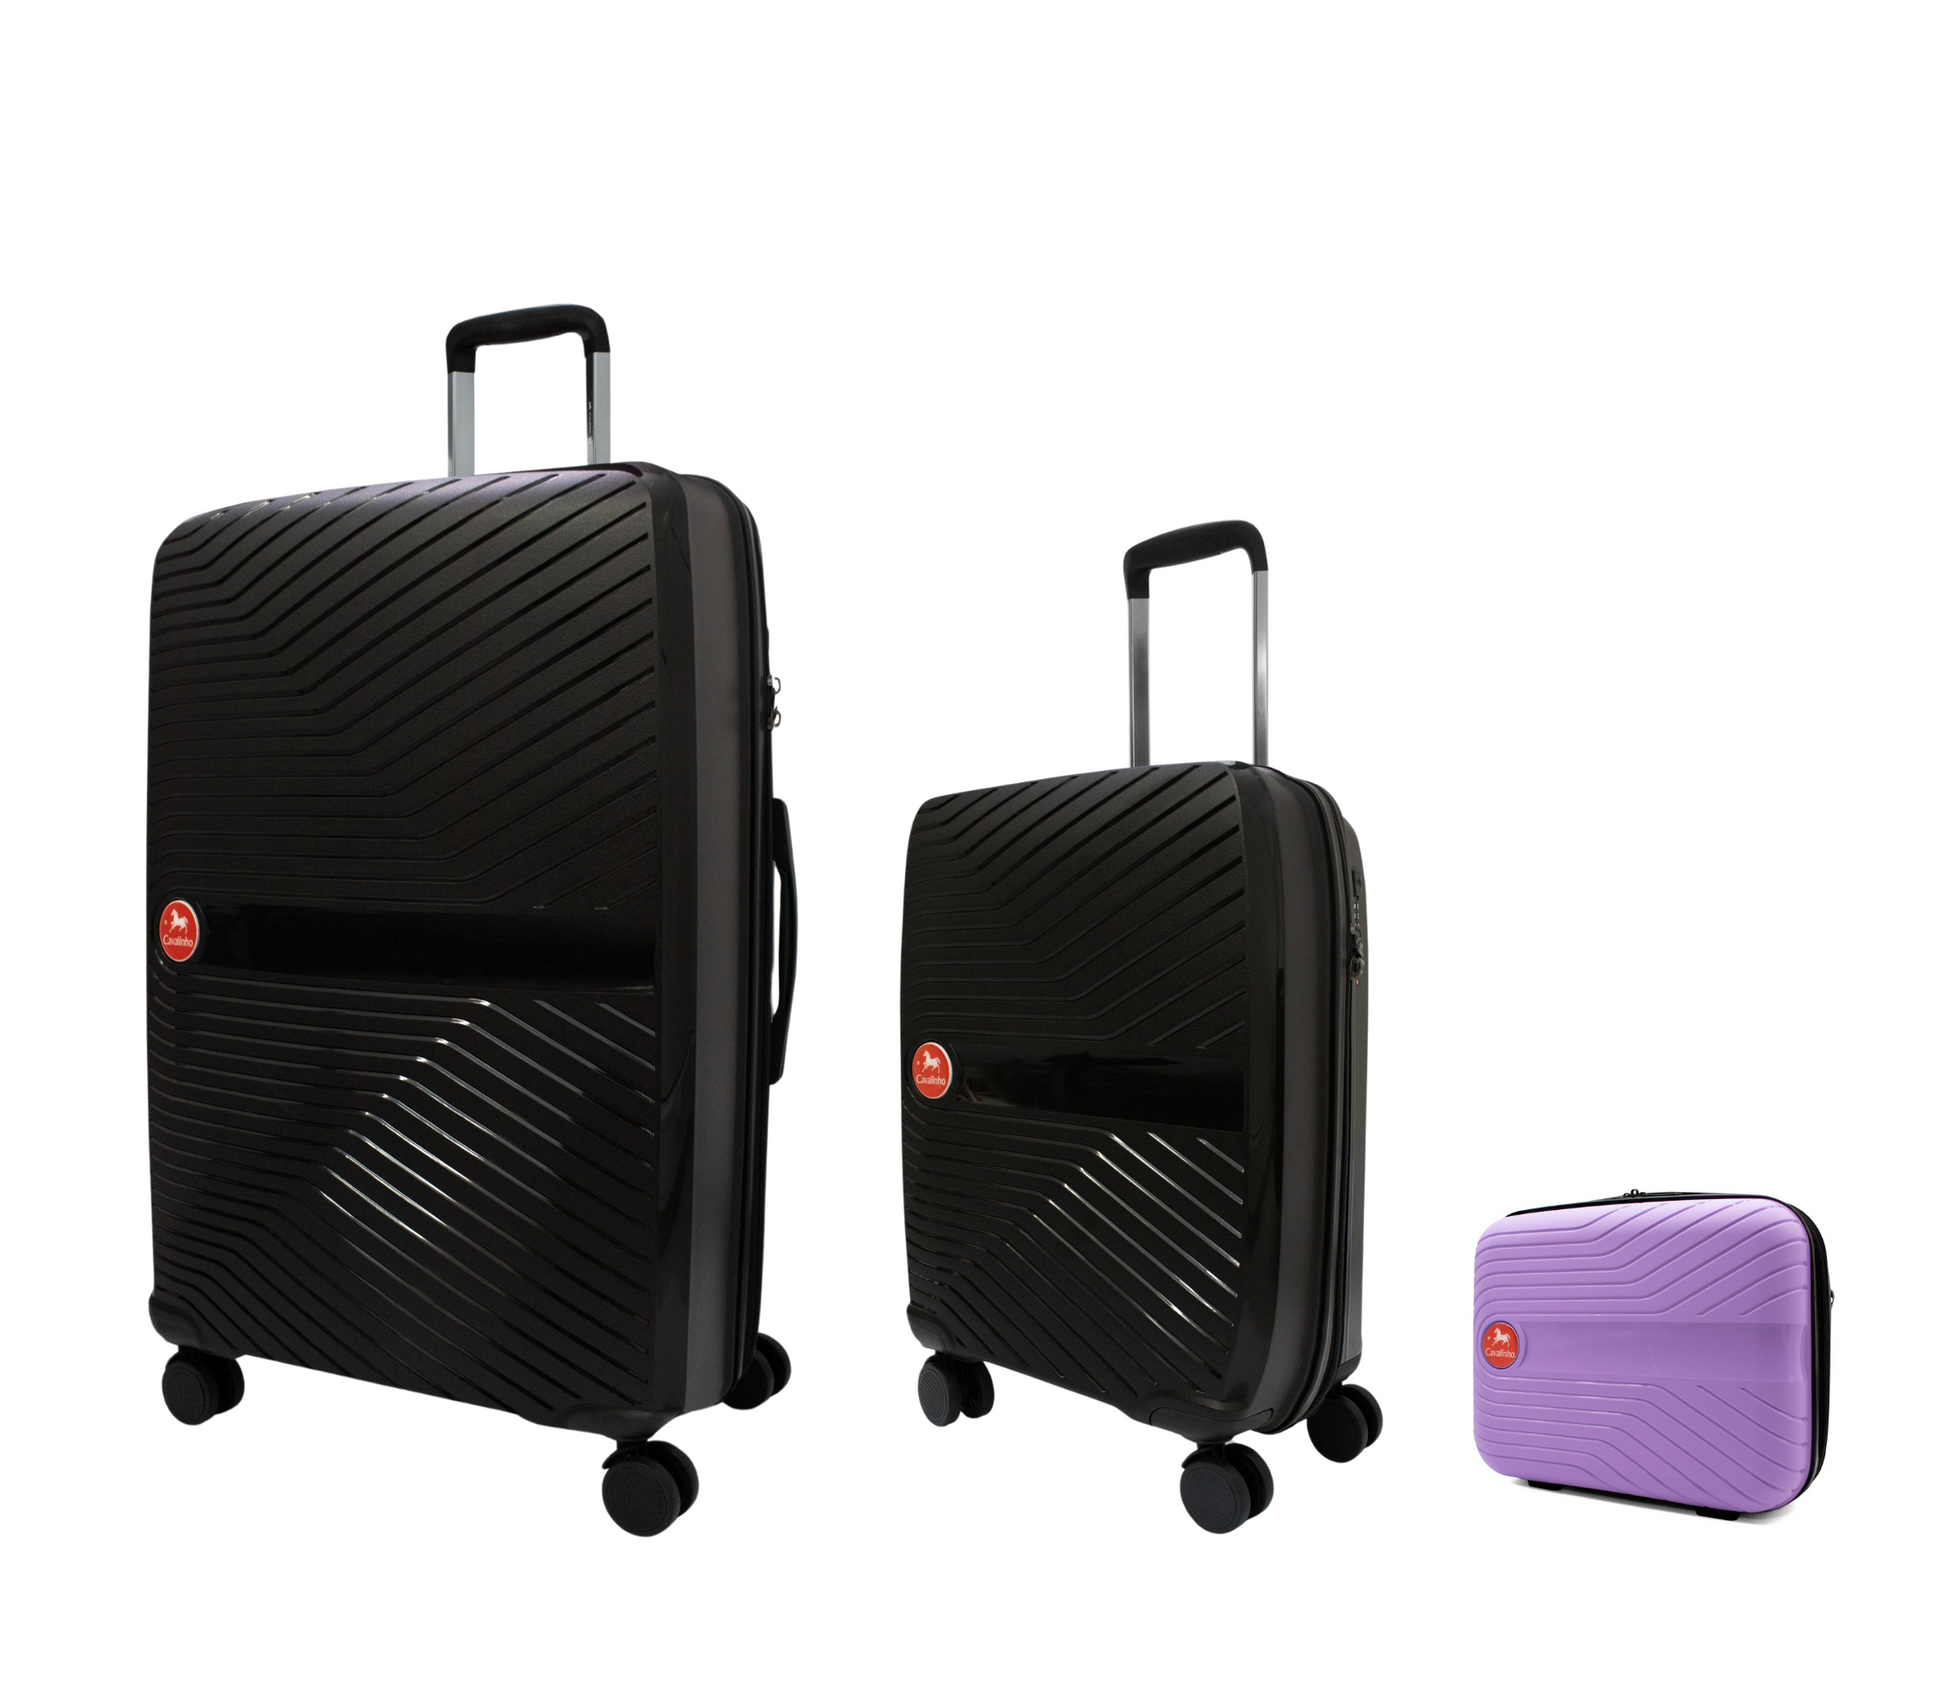 #color_ Lilac Black Black | Cavalinho Canada & USA Colorful 3 Piece Luggage Set (15", 19" & 28") - Lilac Black Black - 68020004.390101.S151928._2